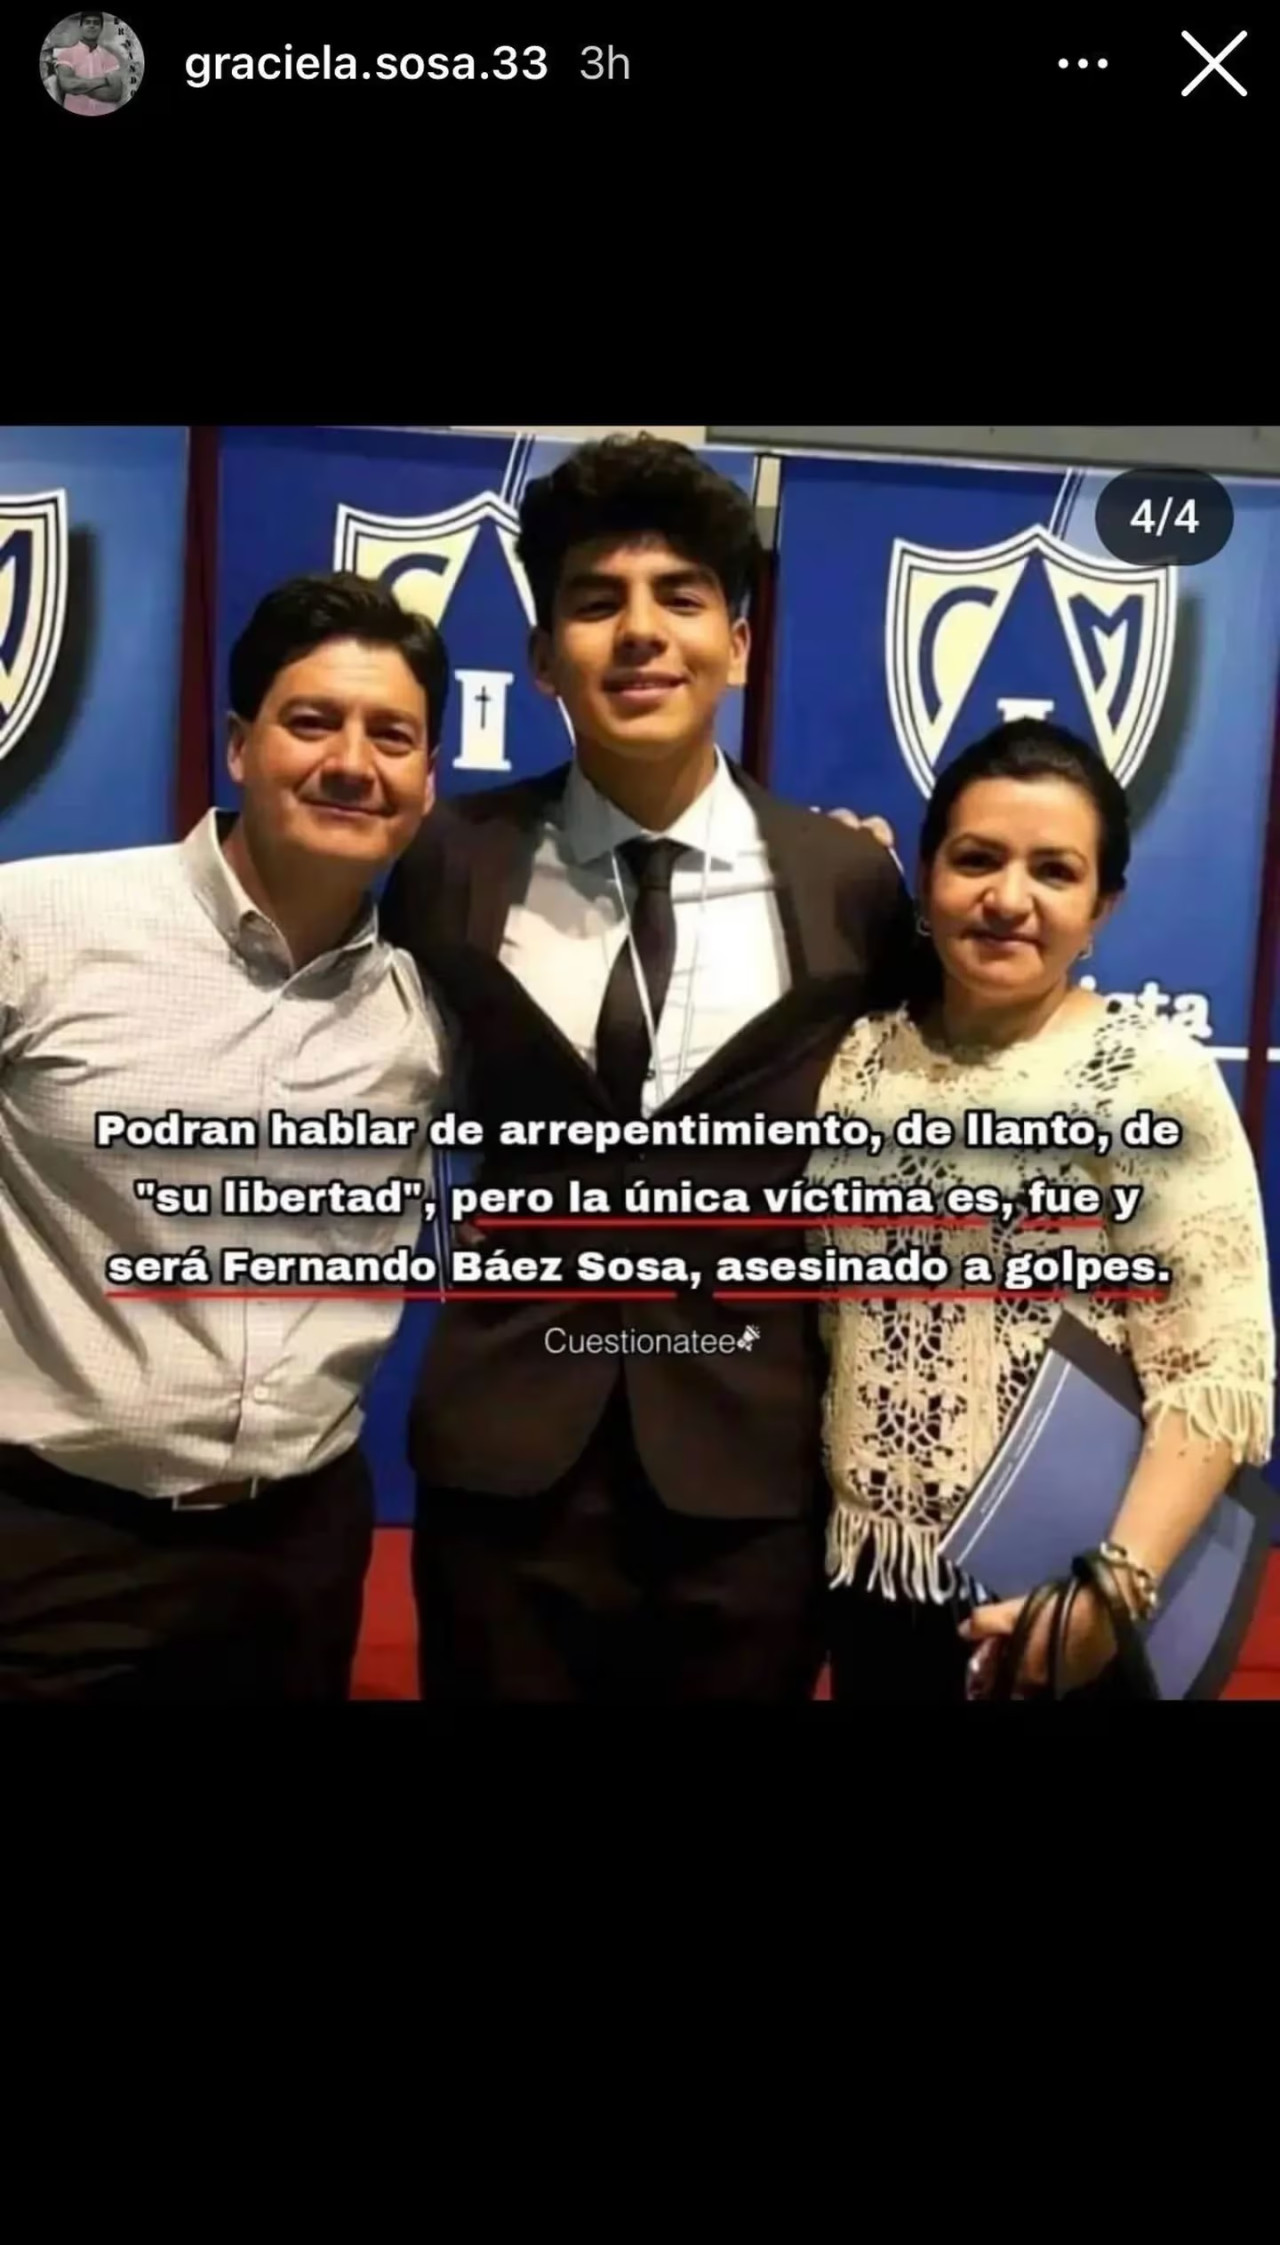 El posteo de la mamá de Fernando Báez Sosa.(Foto: Instagram/@graciela.sosa.33)